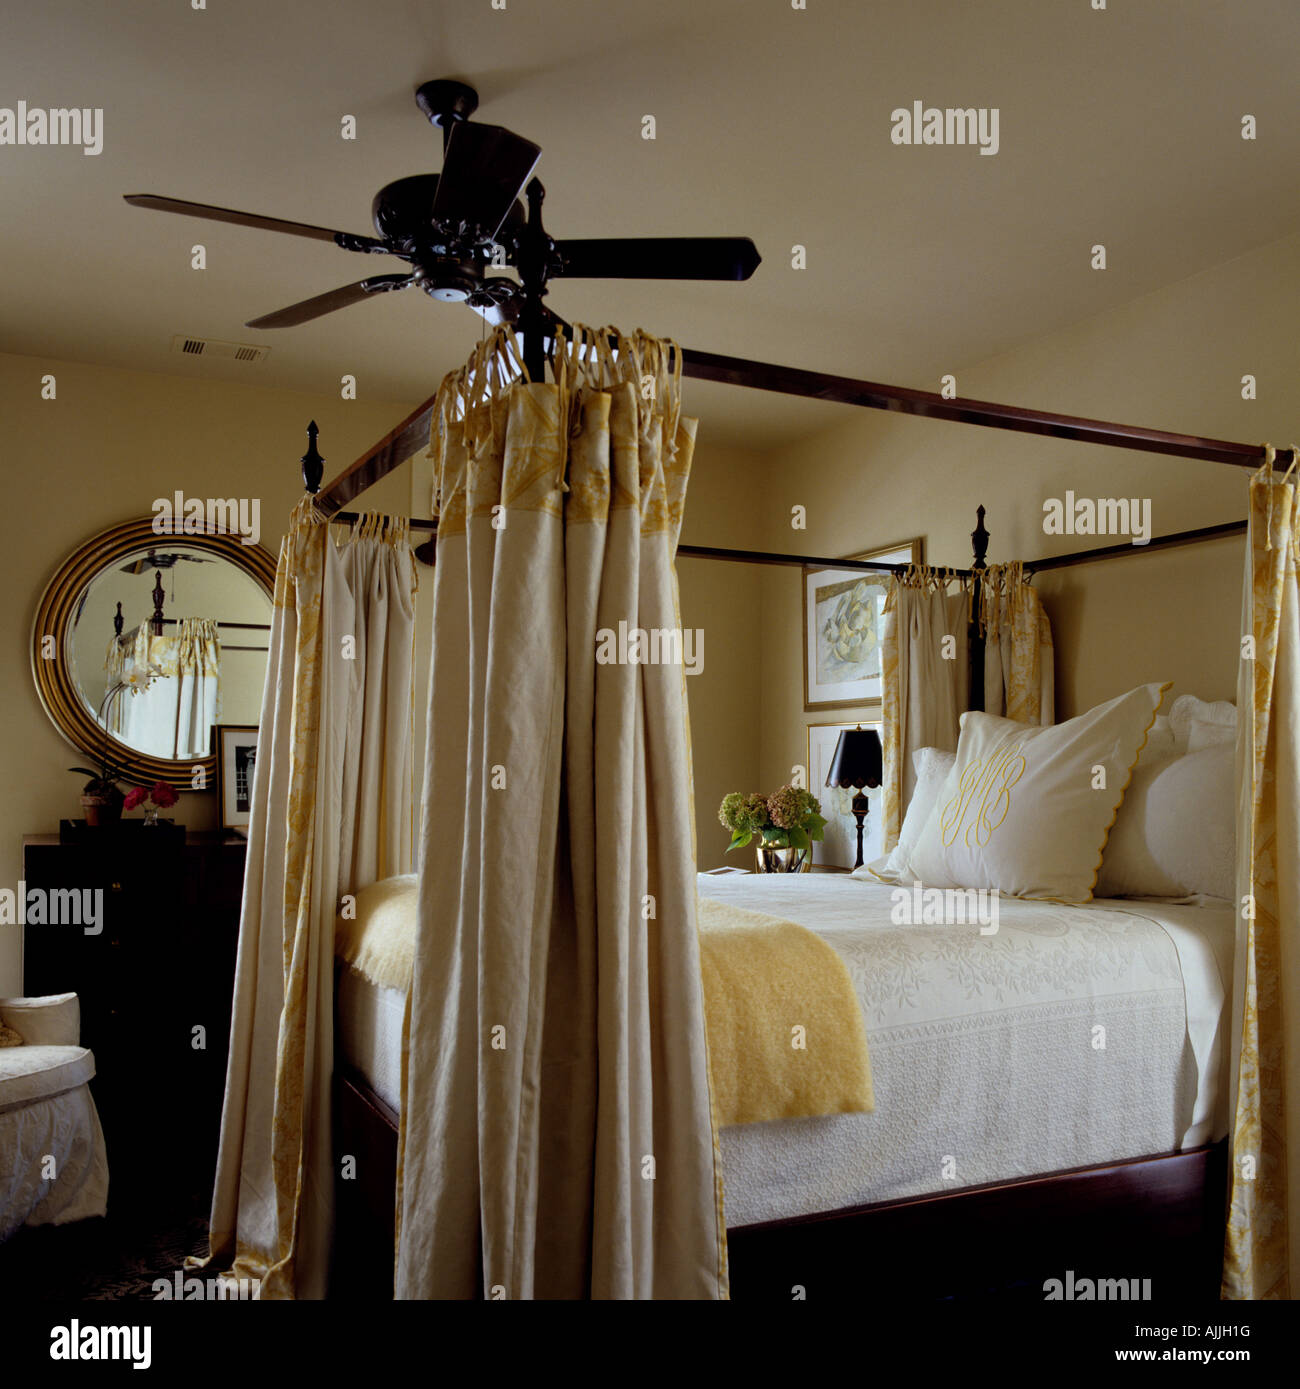 Schlafzimmereinrichtungen Bett mit Gardinenstange im Schlafzimmer mit  runder Spiegel und Deckenventilator Stockfotografie - Alamy